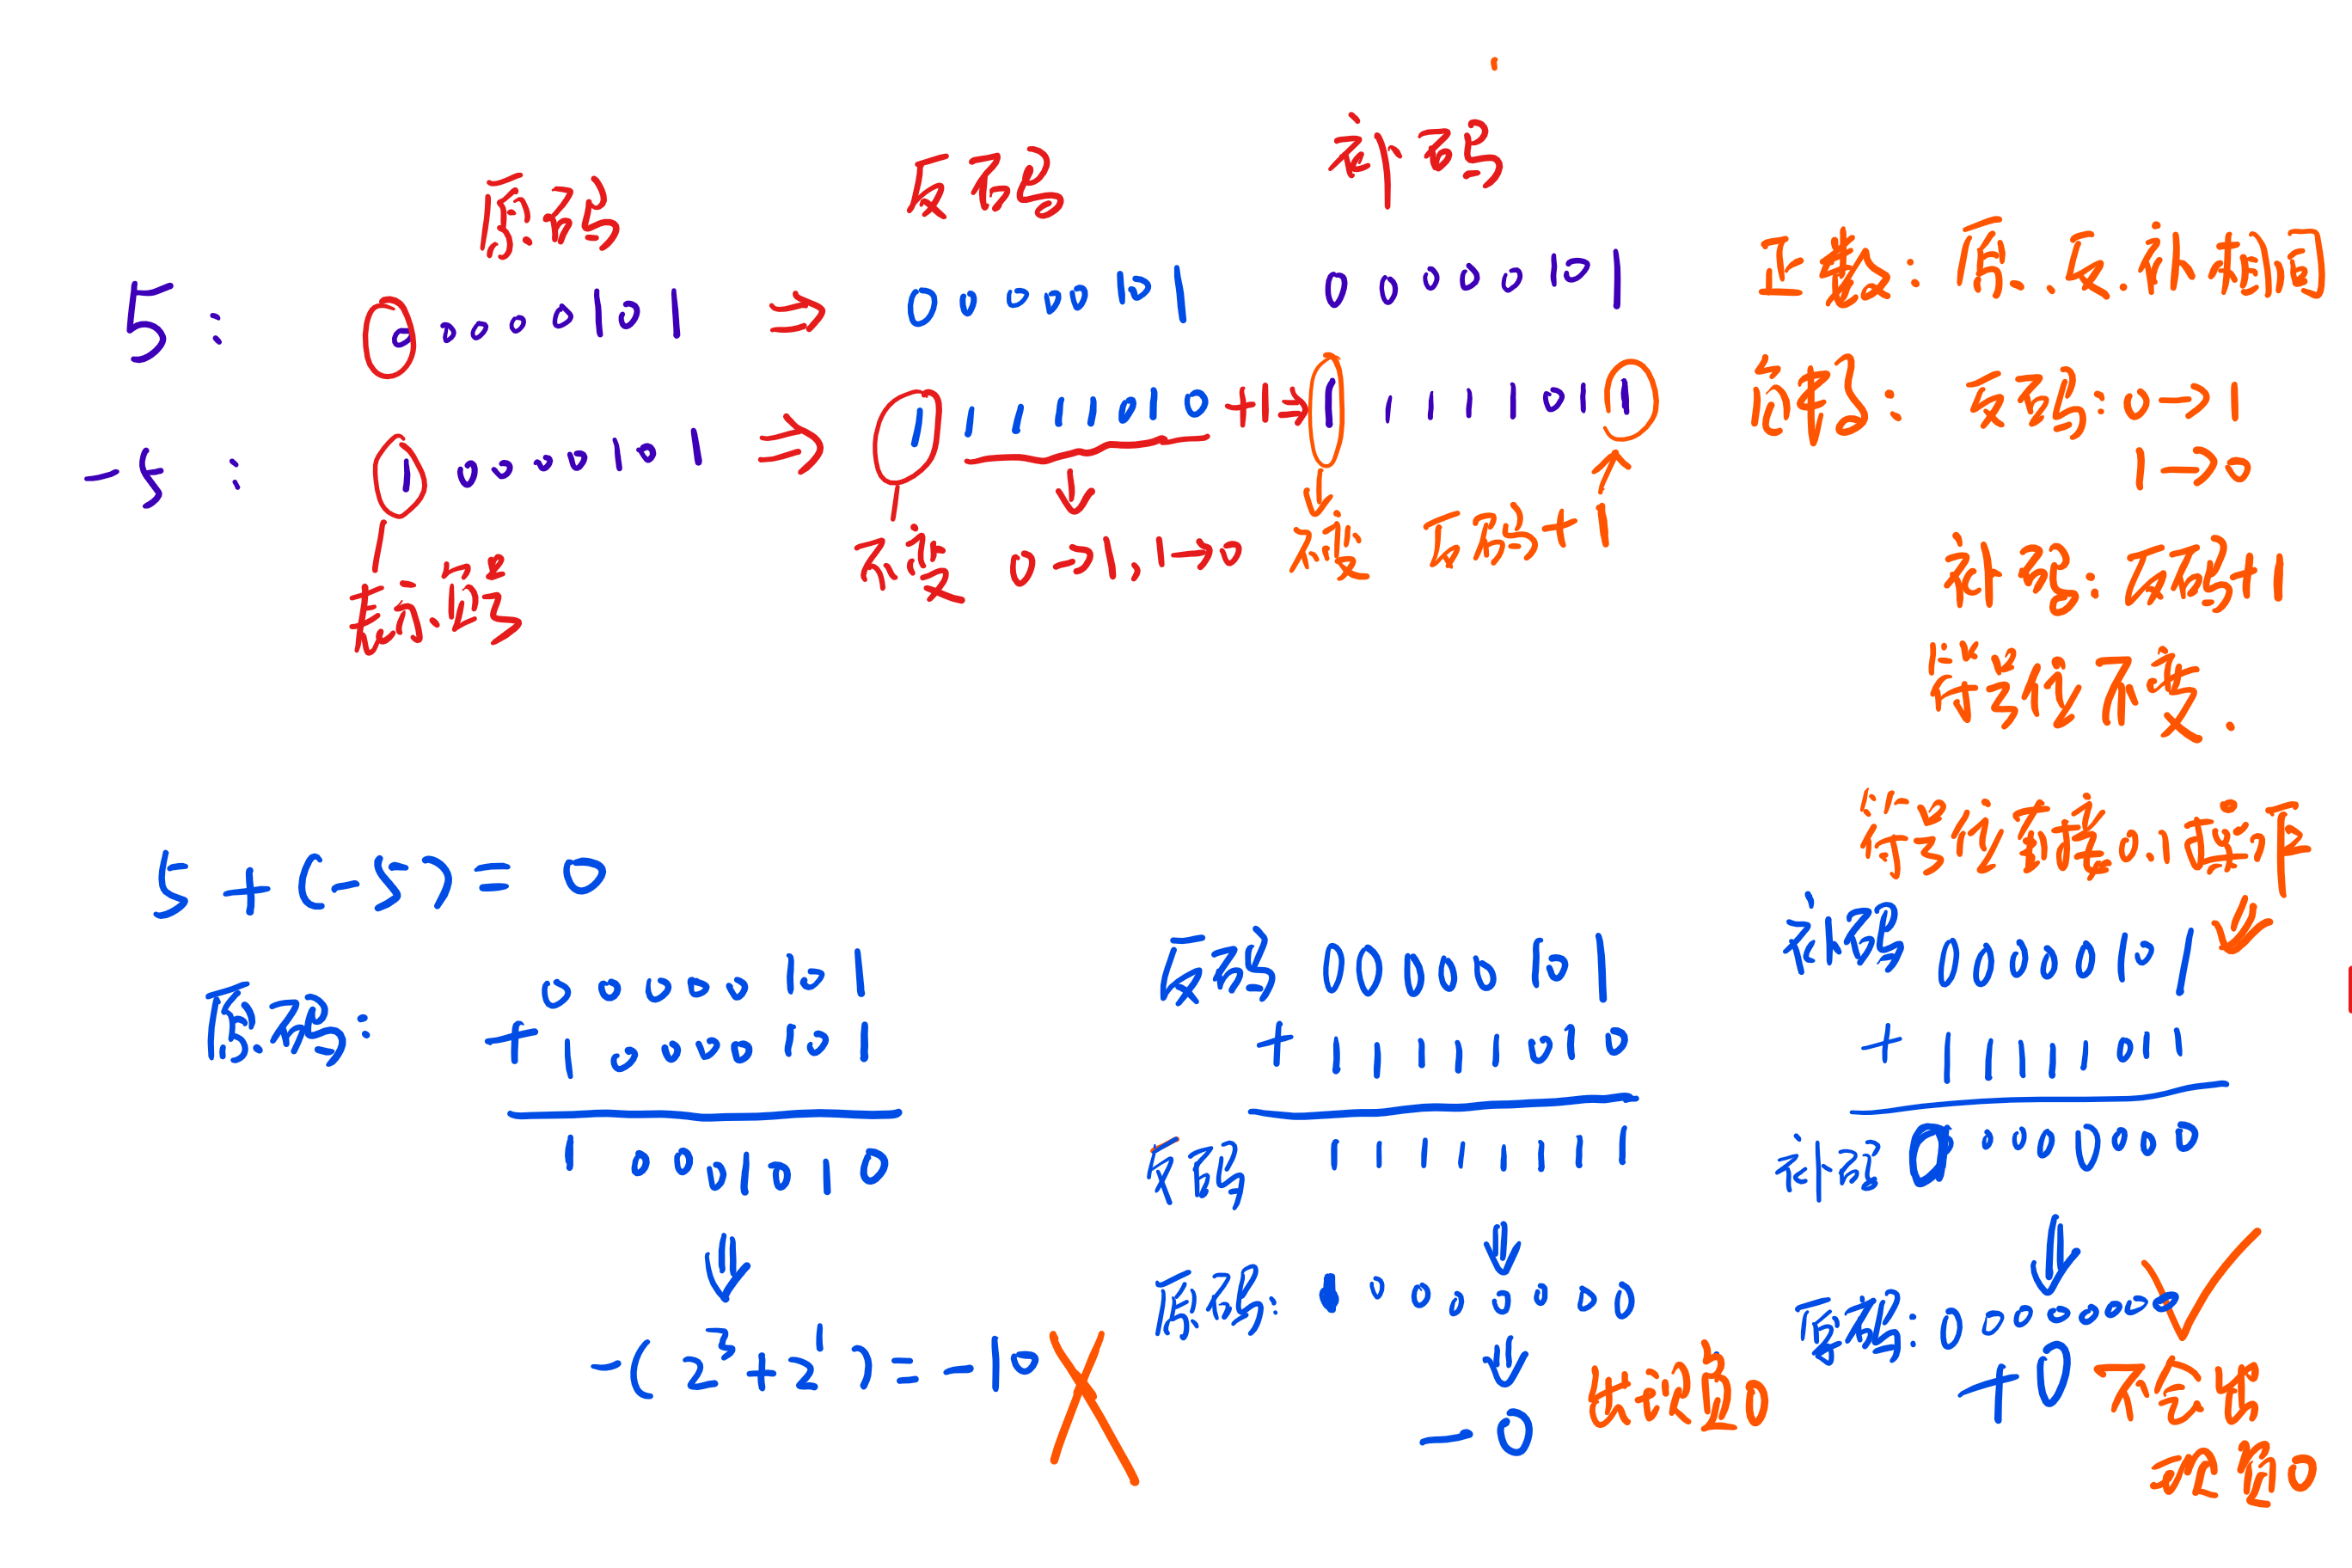 图2 原码、反码和补码示例1